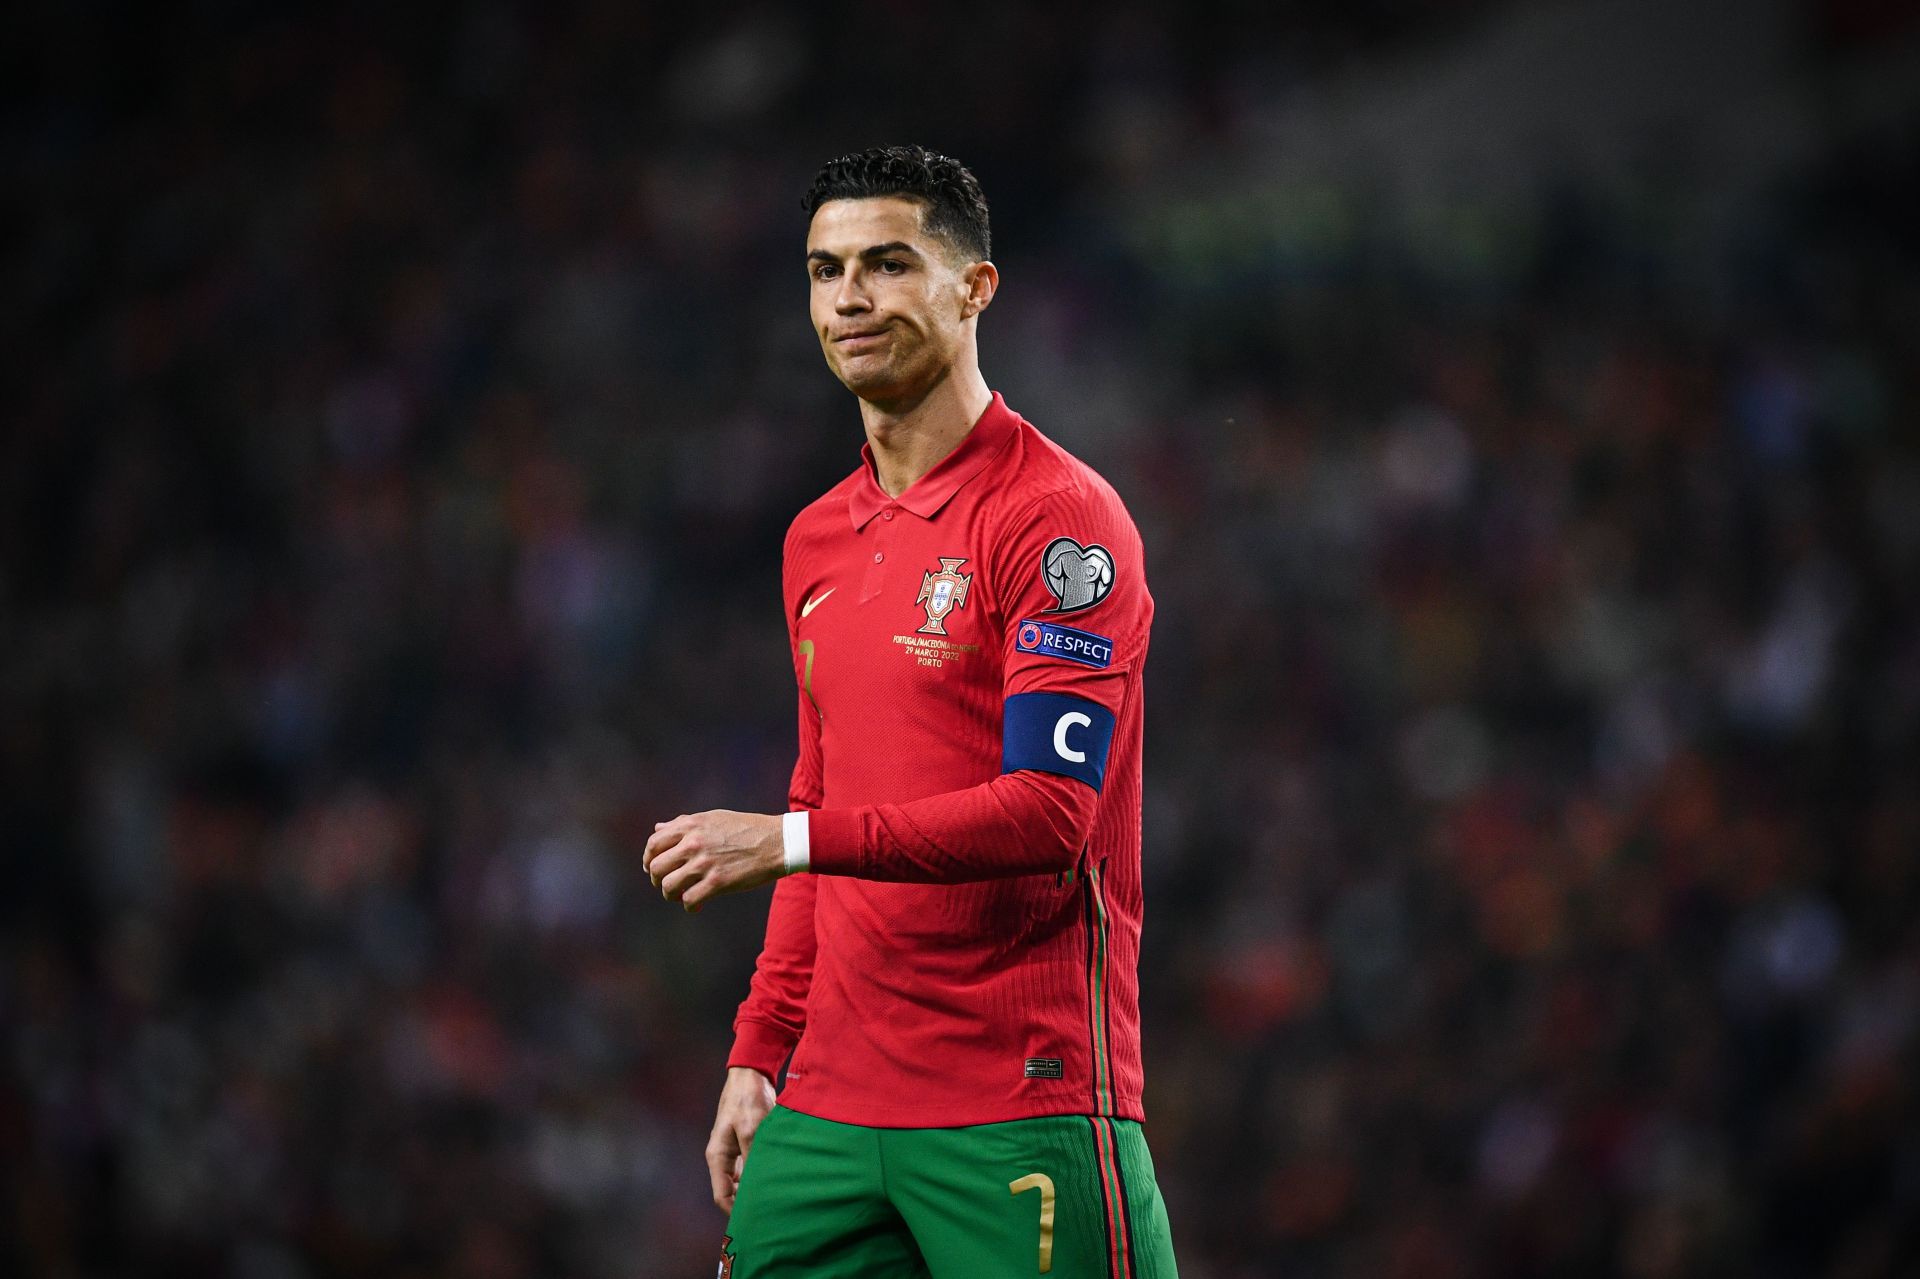 Cristiano Ronaldo will lead Portugal in Qatar